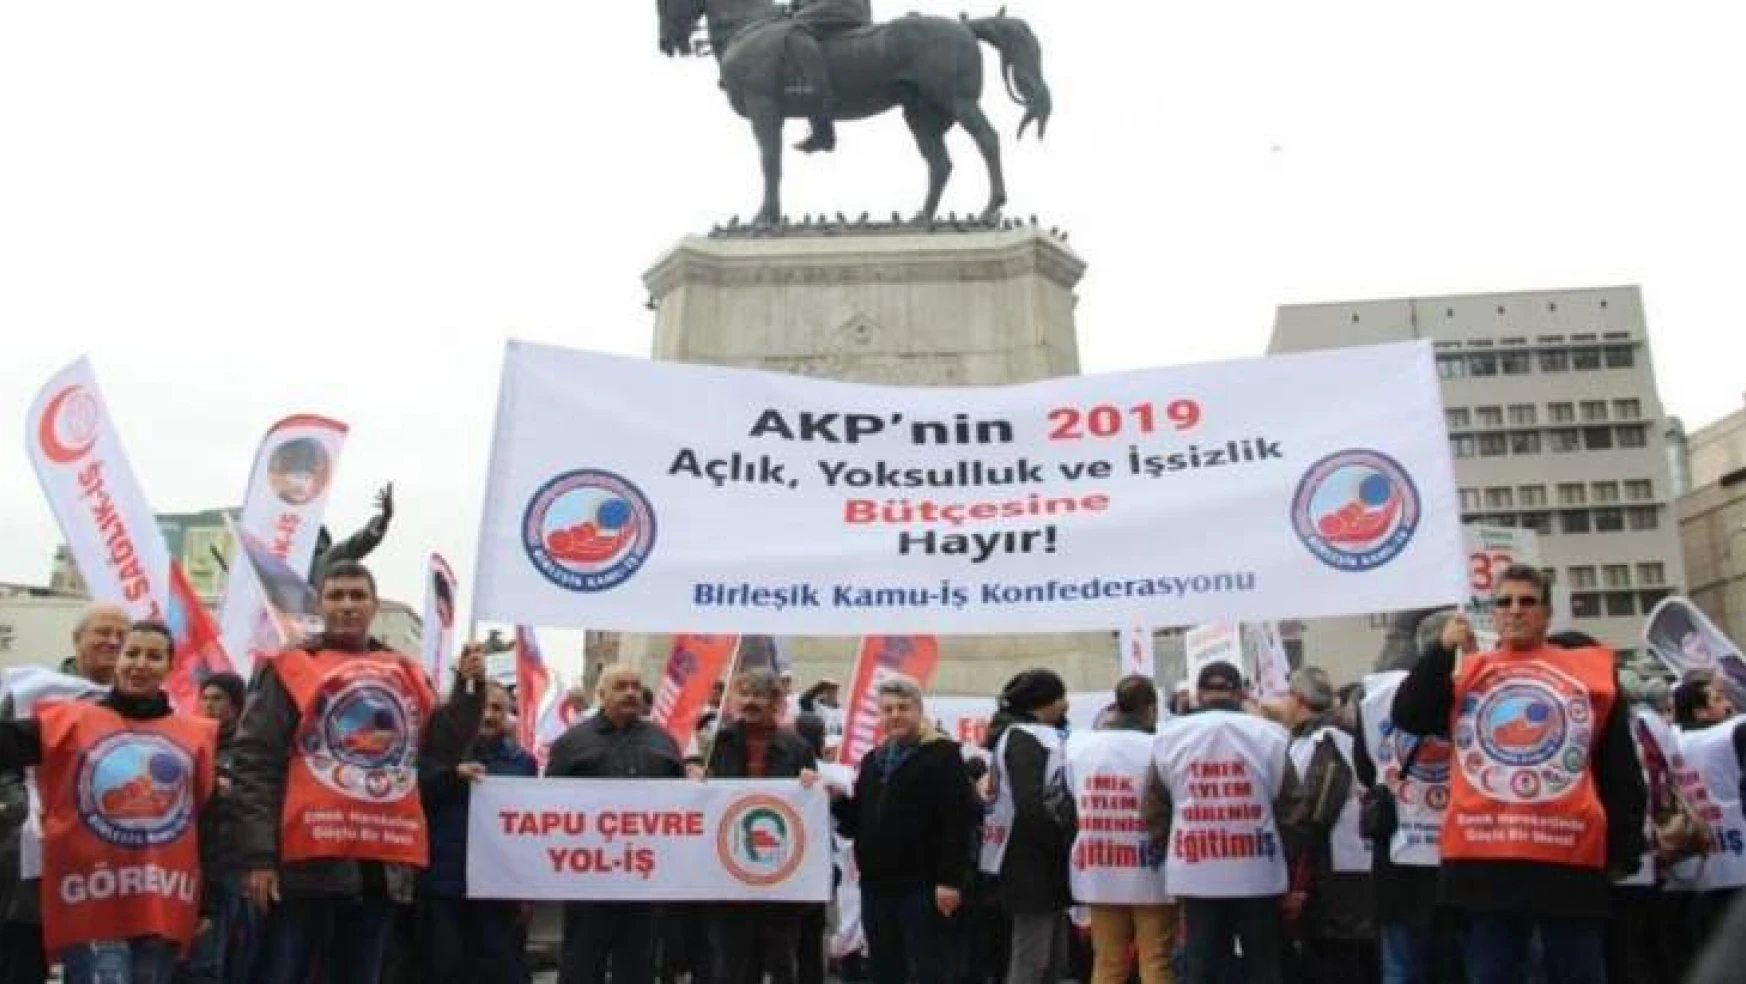 AKP'nin 2019 bütçesini protesto ettik